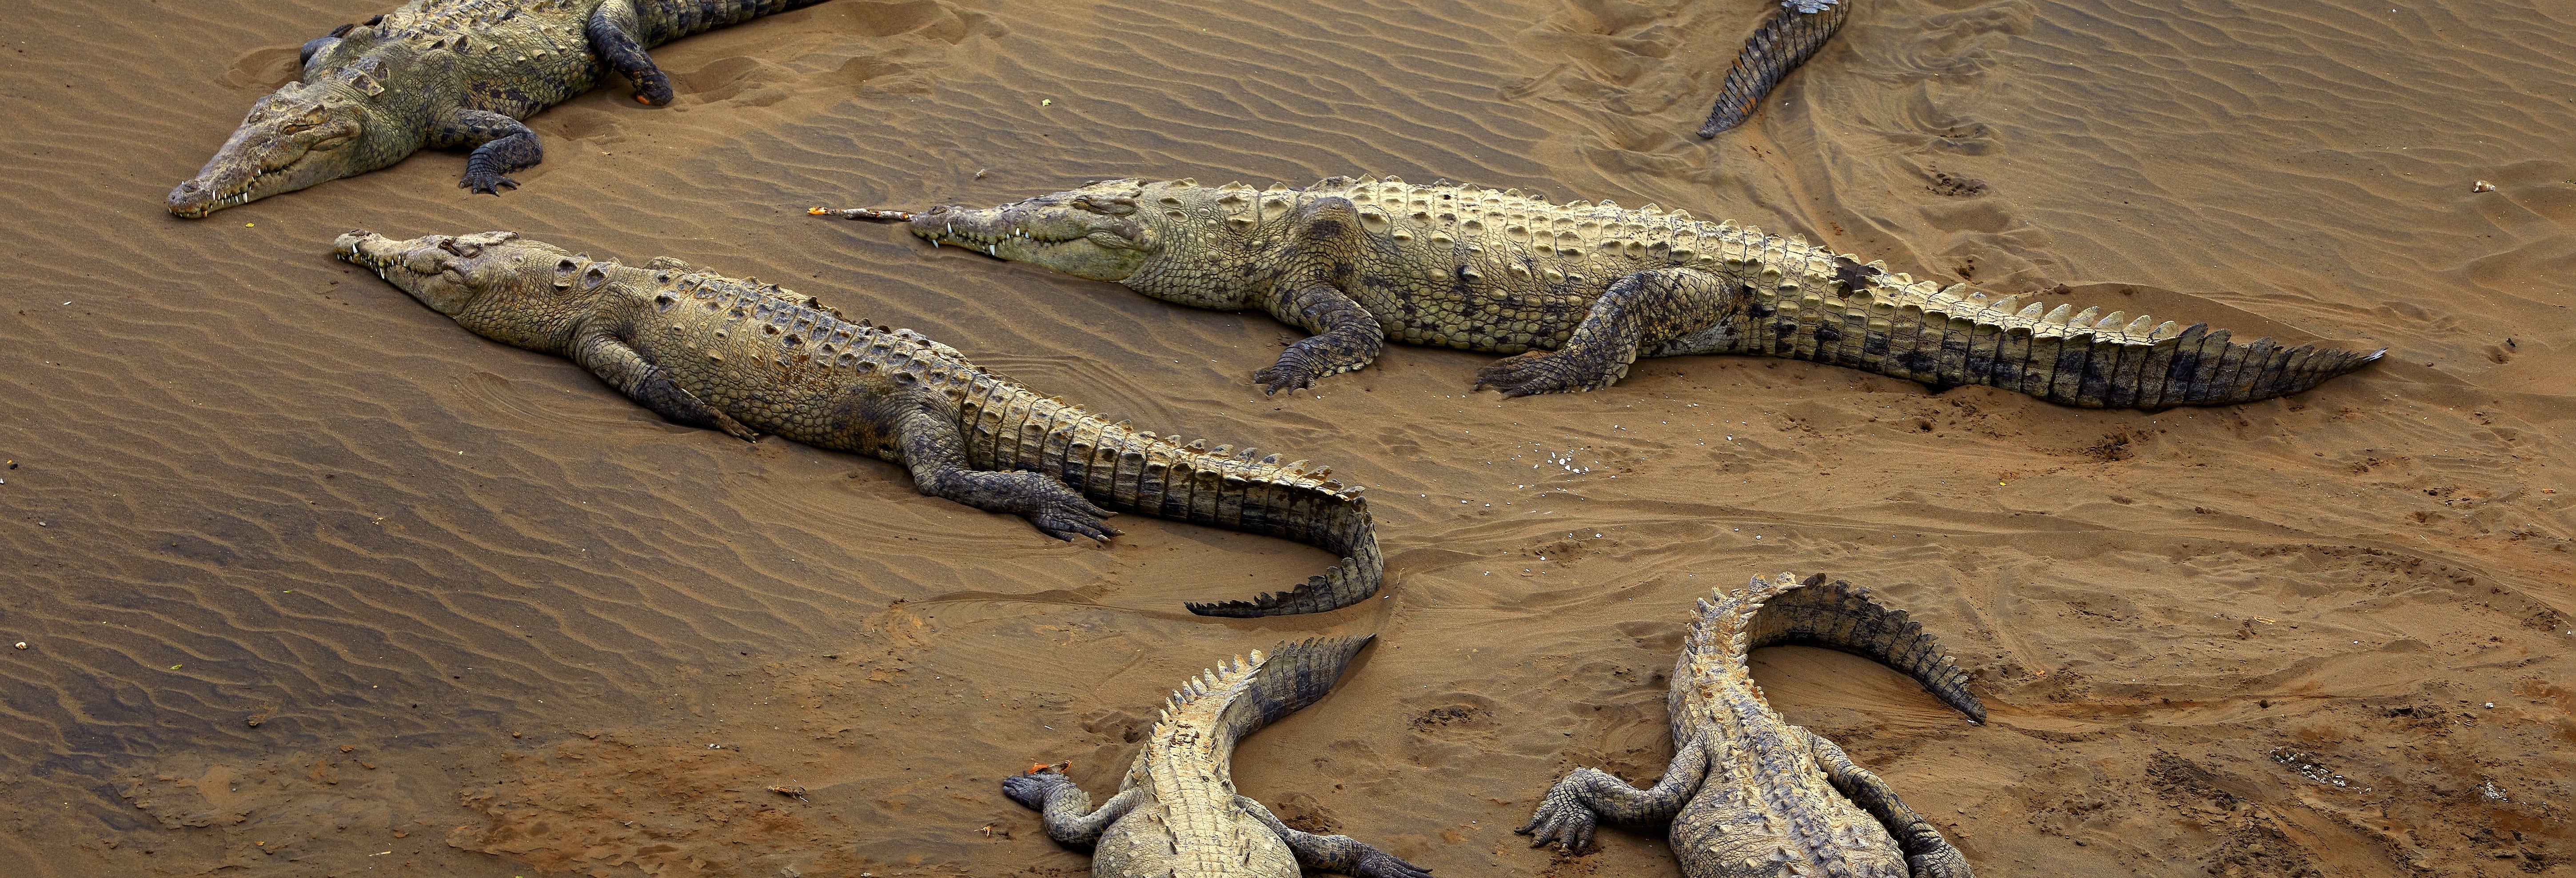 Avistamento de crocodilos no rio Tárcoles